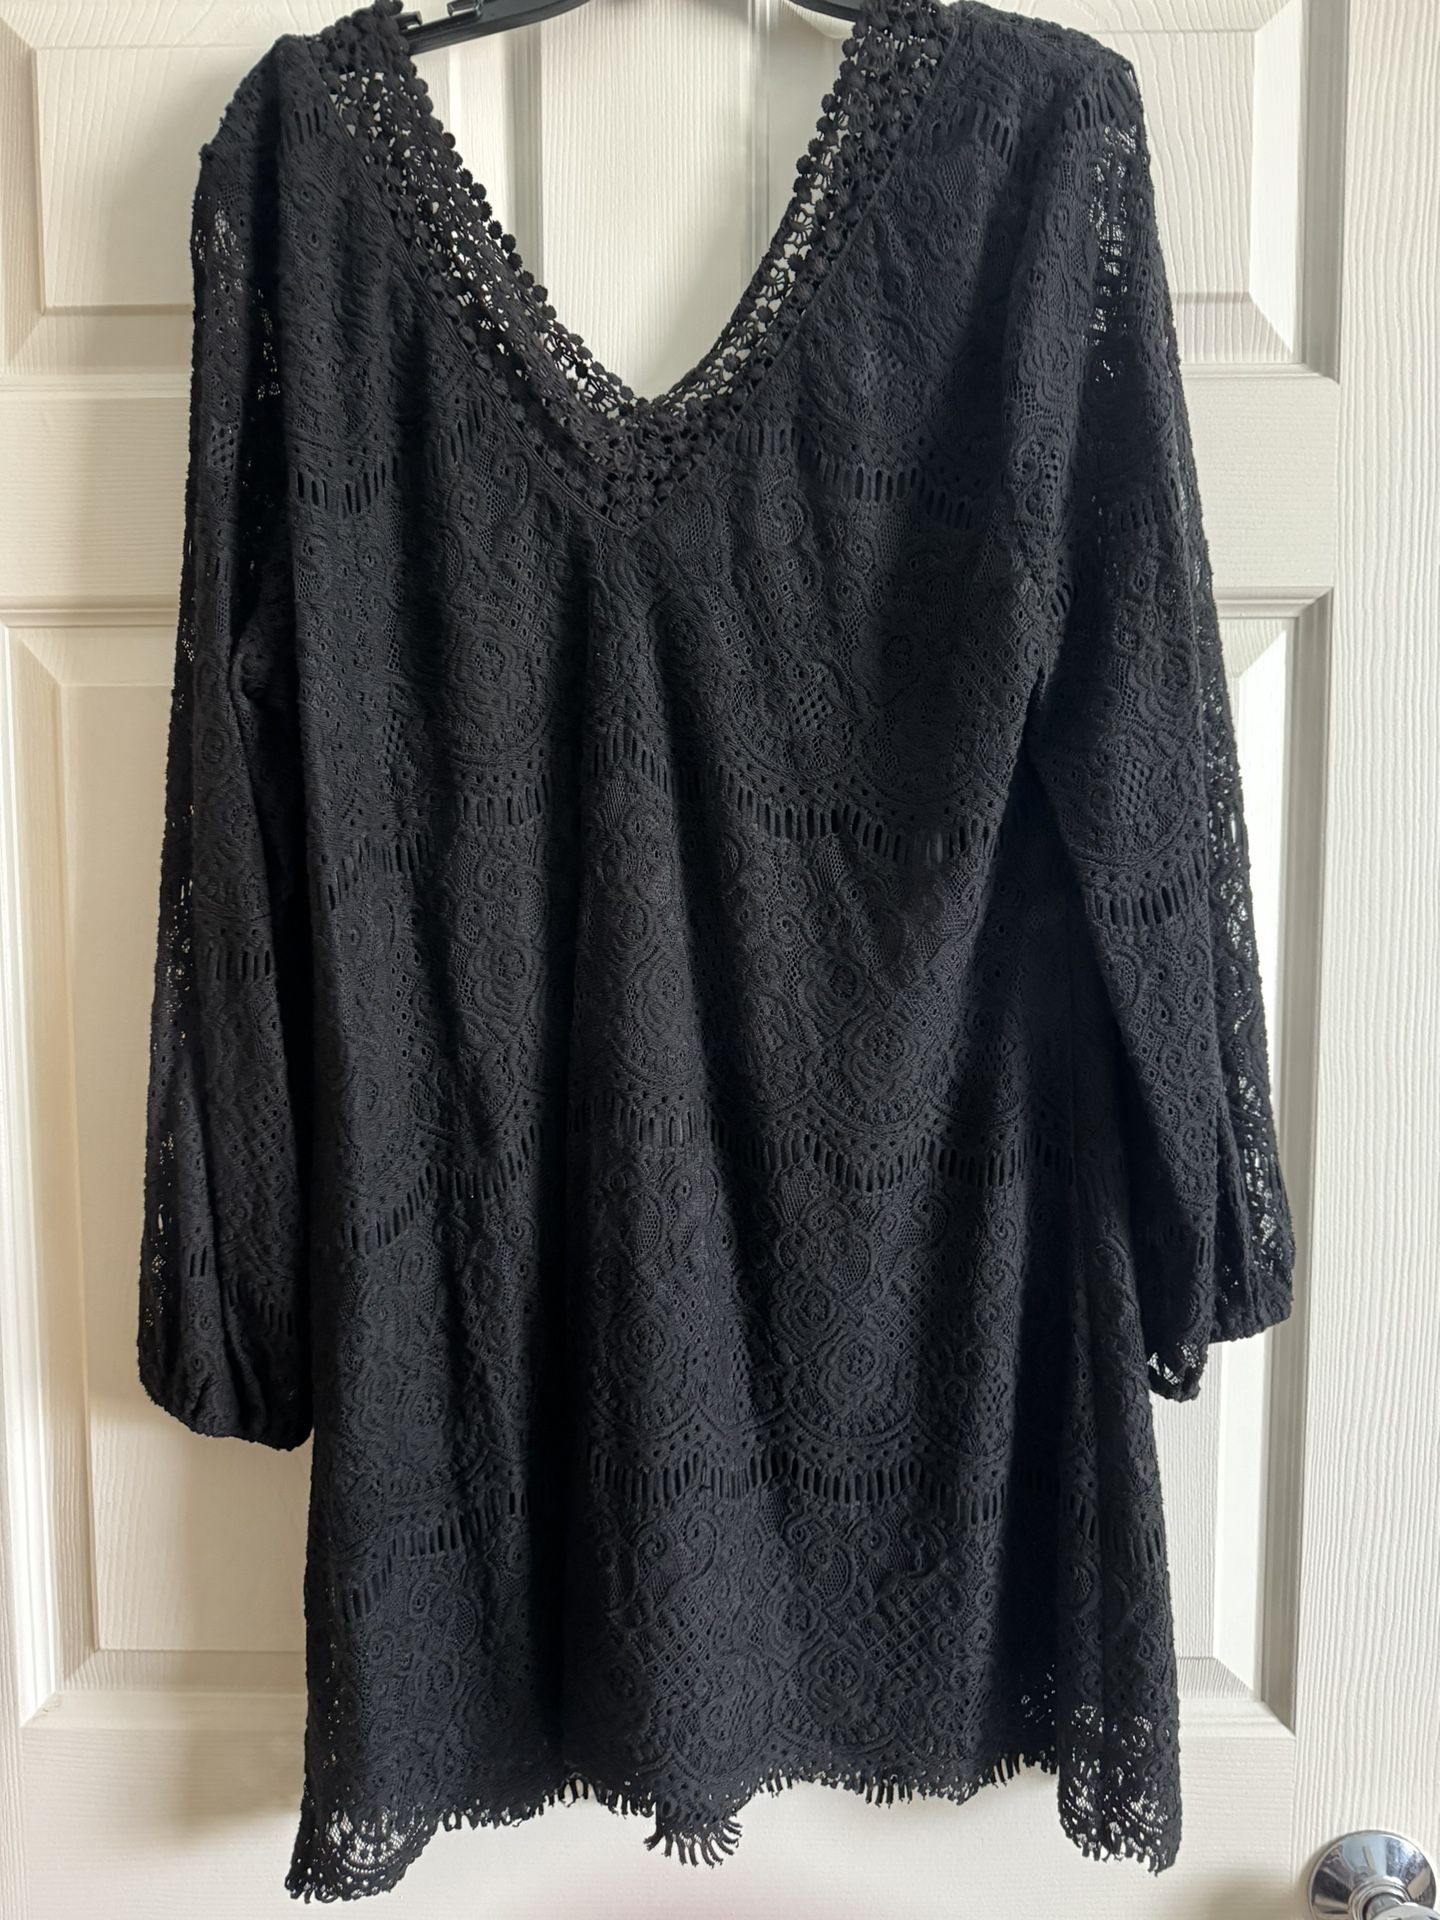 Black Lace V-Neck Dress/Tunic - Size 18/20